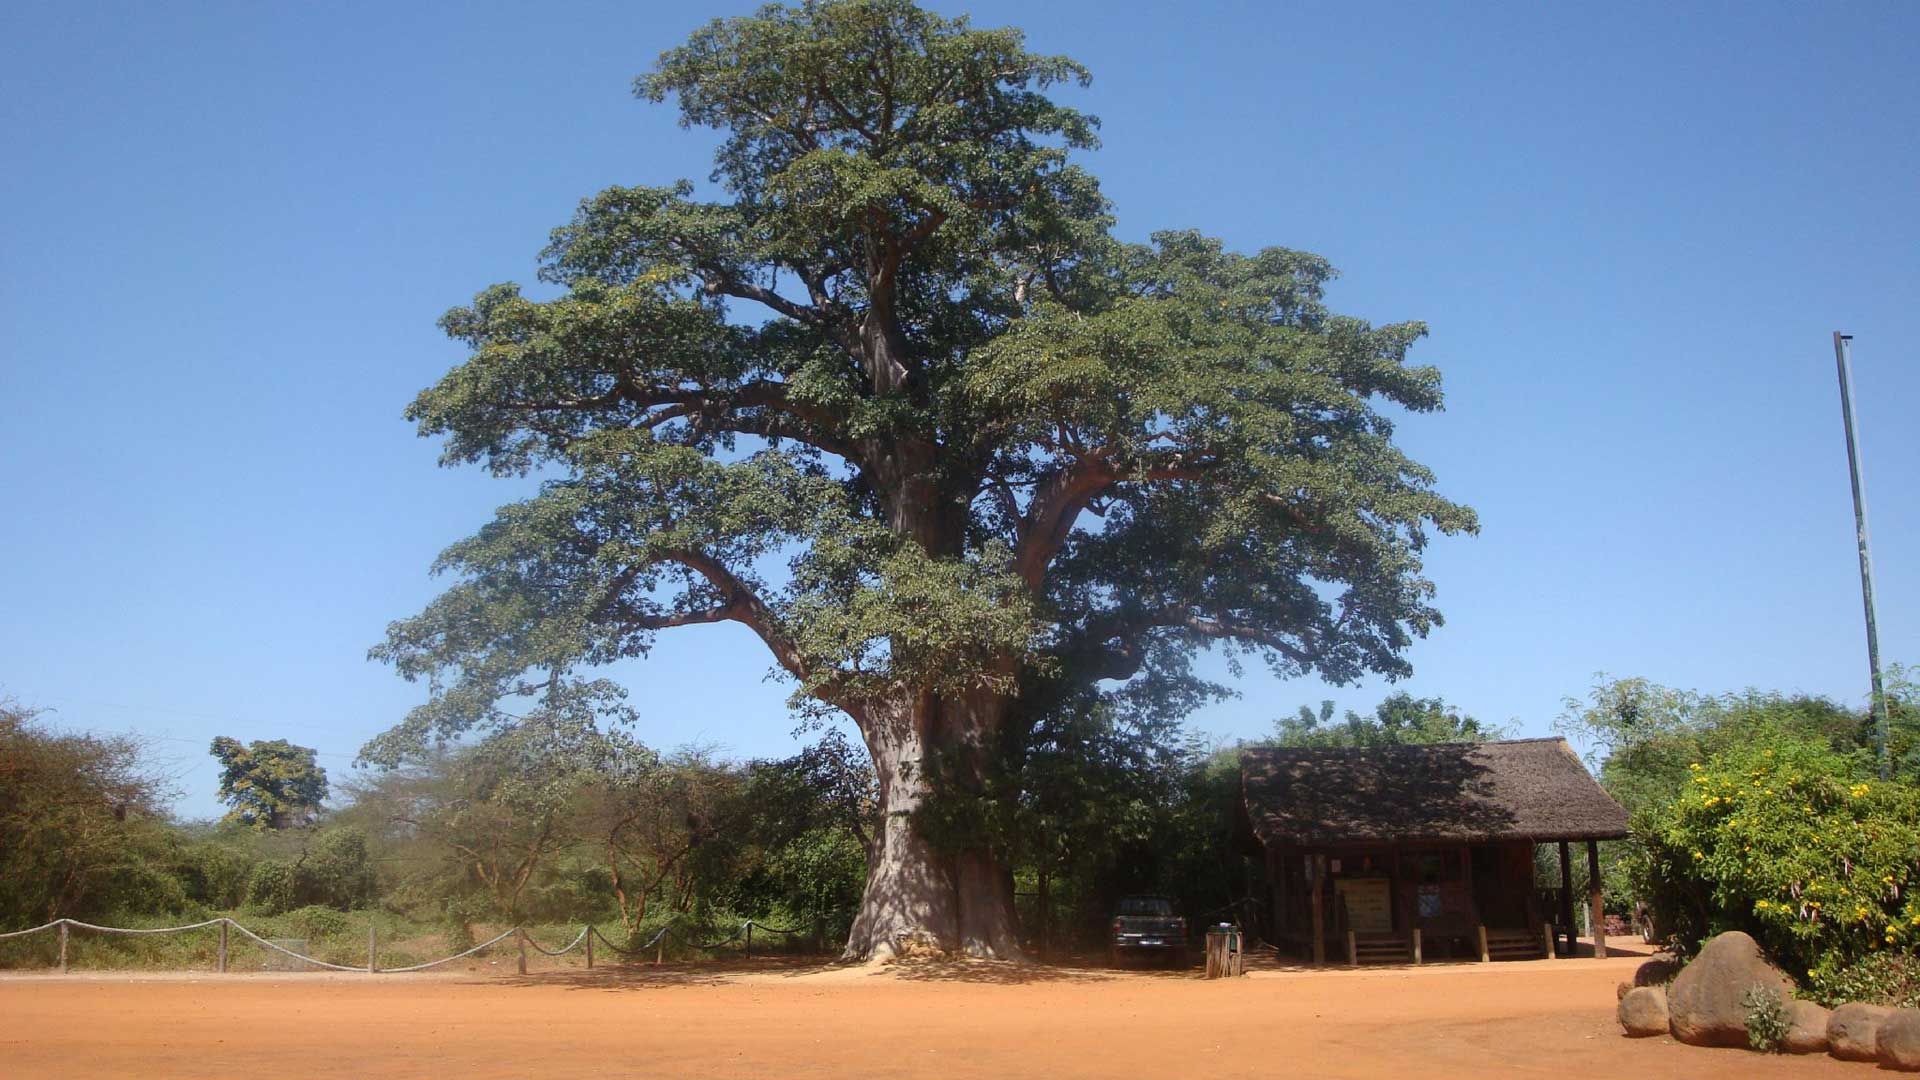 A la rencontre de tous les grands mammifères d’Afrique dans 3’500 ha de nature grandiose : baobabs géants, buissons épineux, lianes capricieuses.